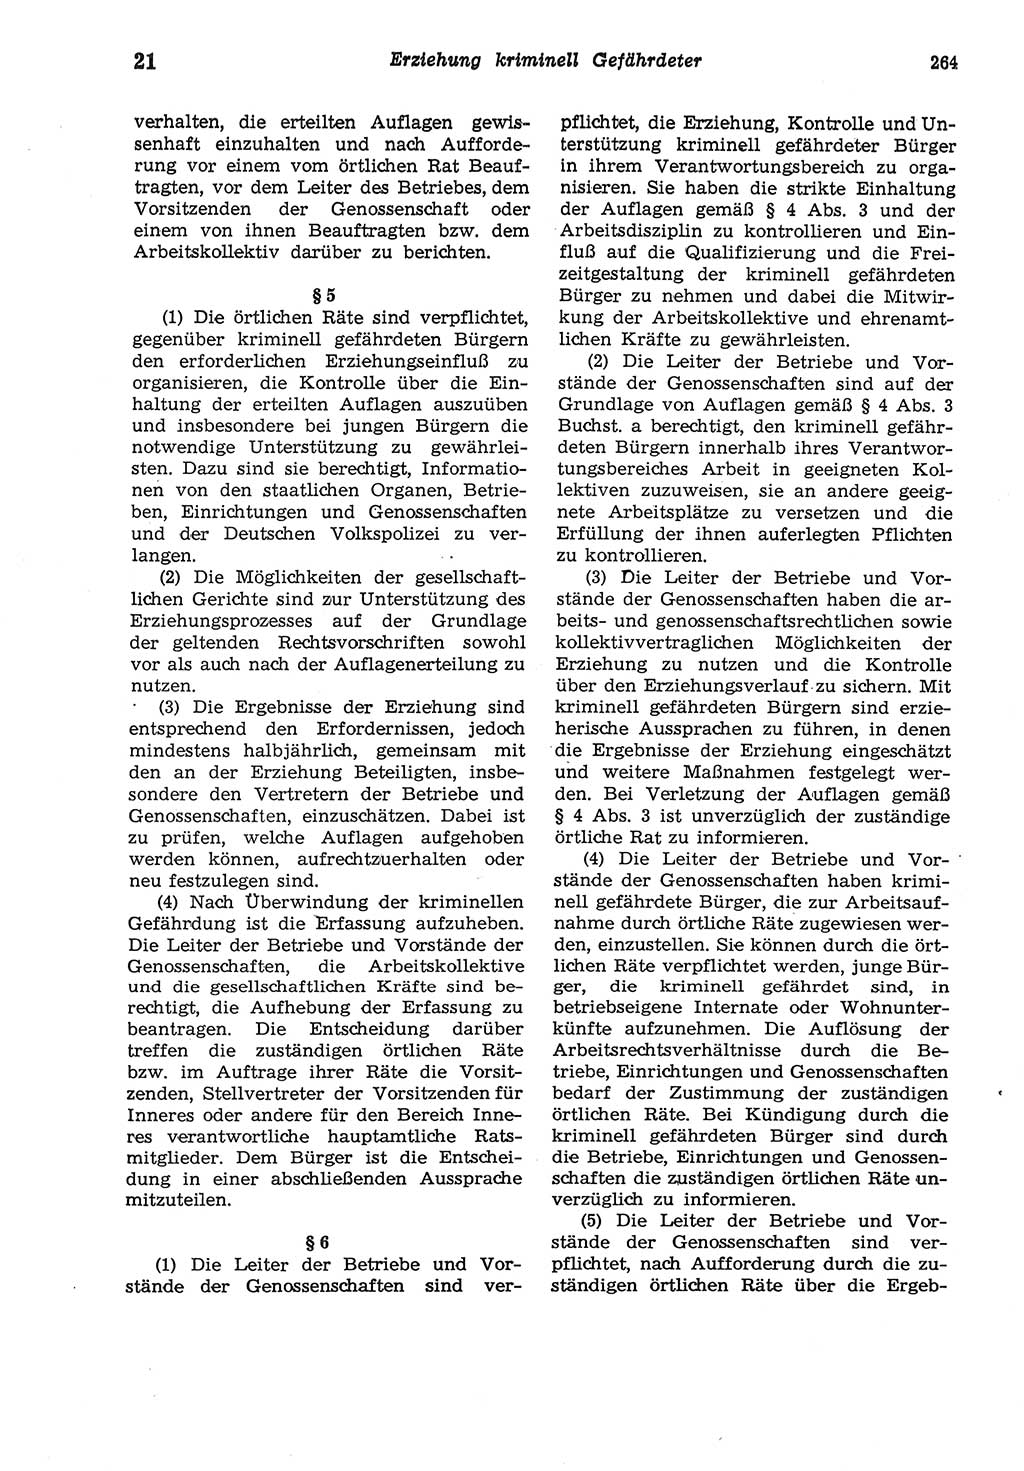 Strafgesetzbuch (StGB) der Deutschen Demokratischen Republik (DDR) und angrenzende Gesetze und Bestimmungen 1975, Seite 264 (StGB DDR Ges. Best. 1975, S. 264)